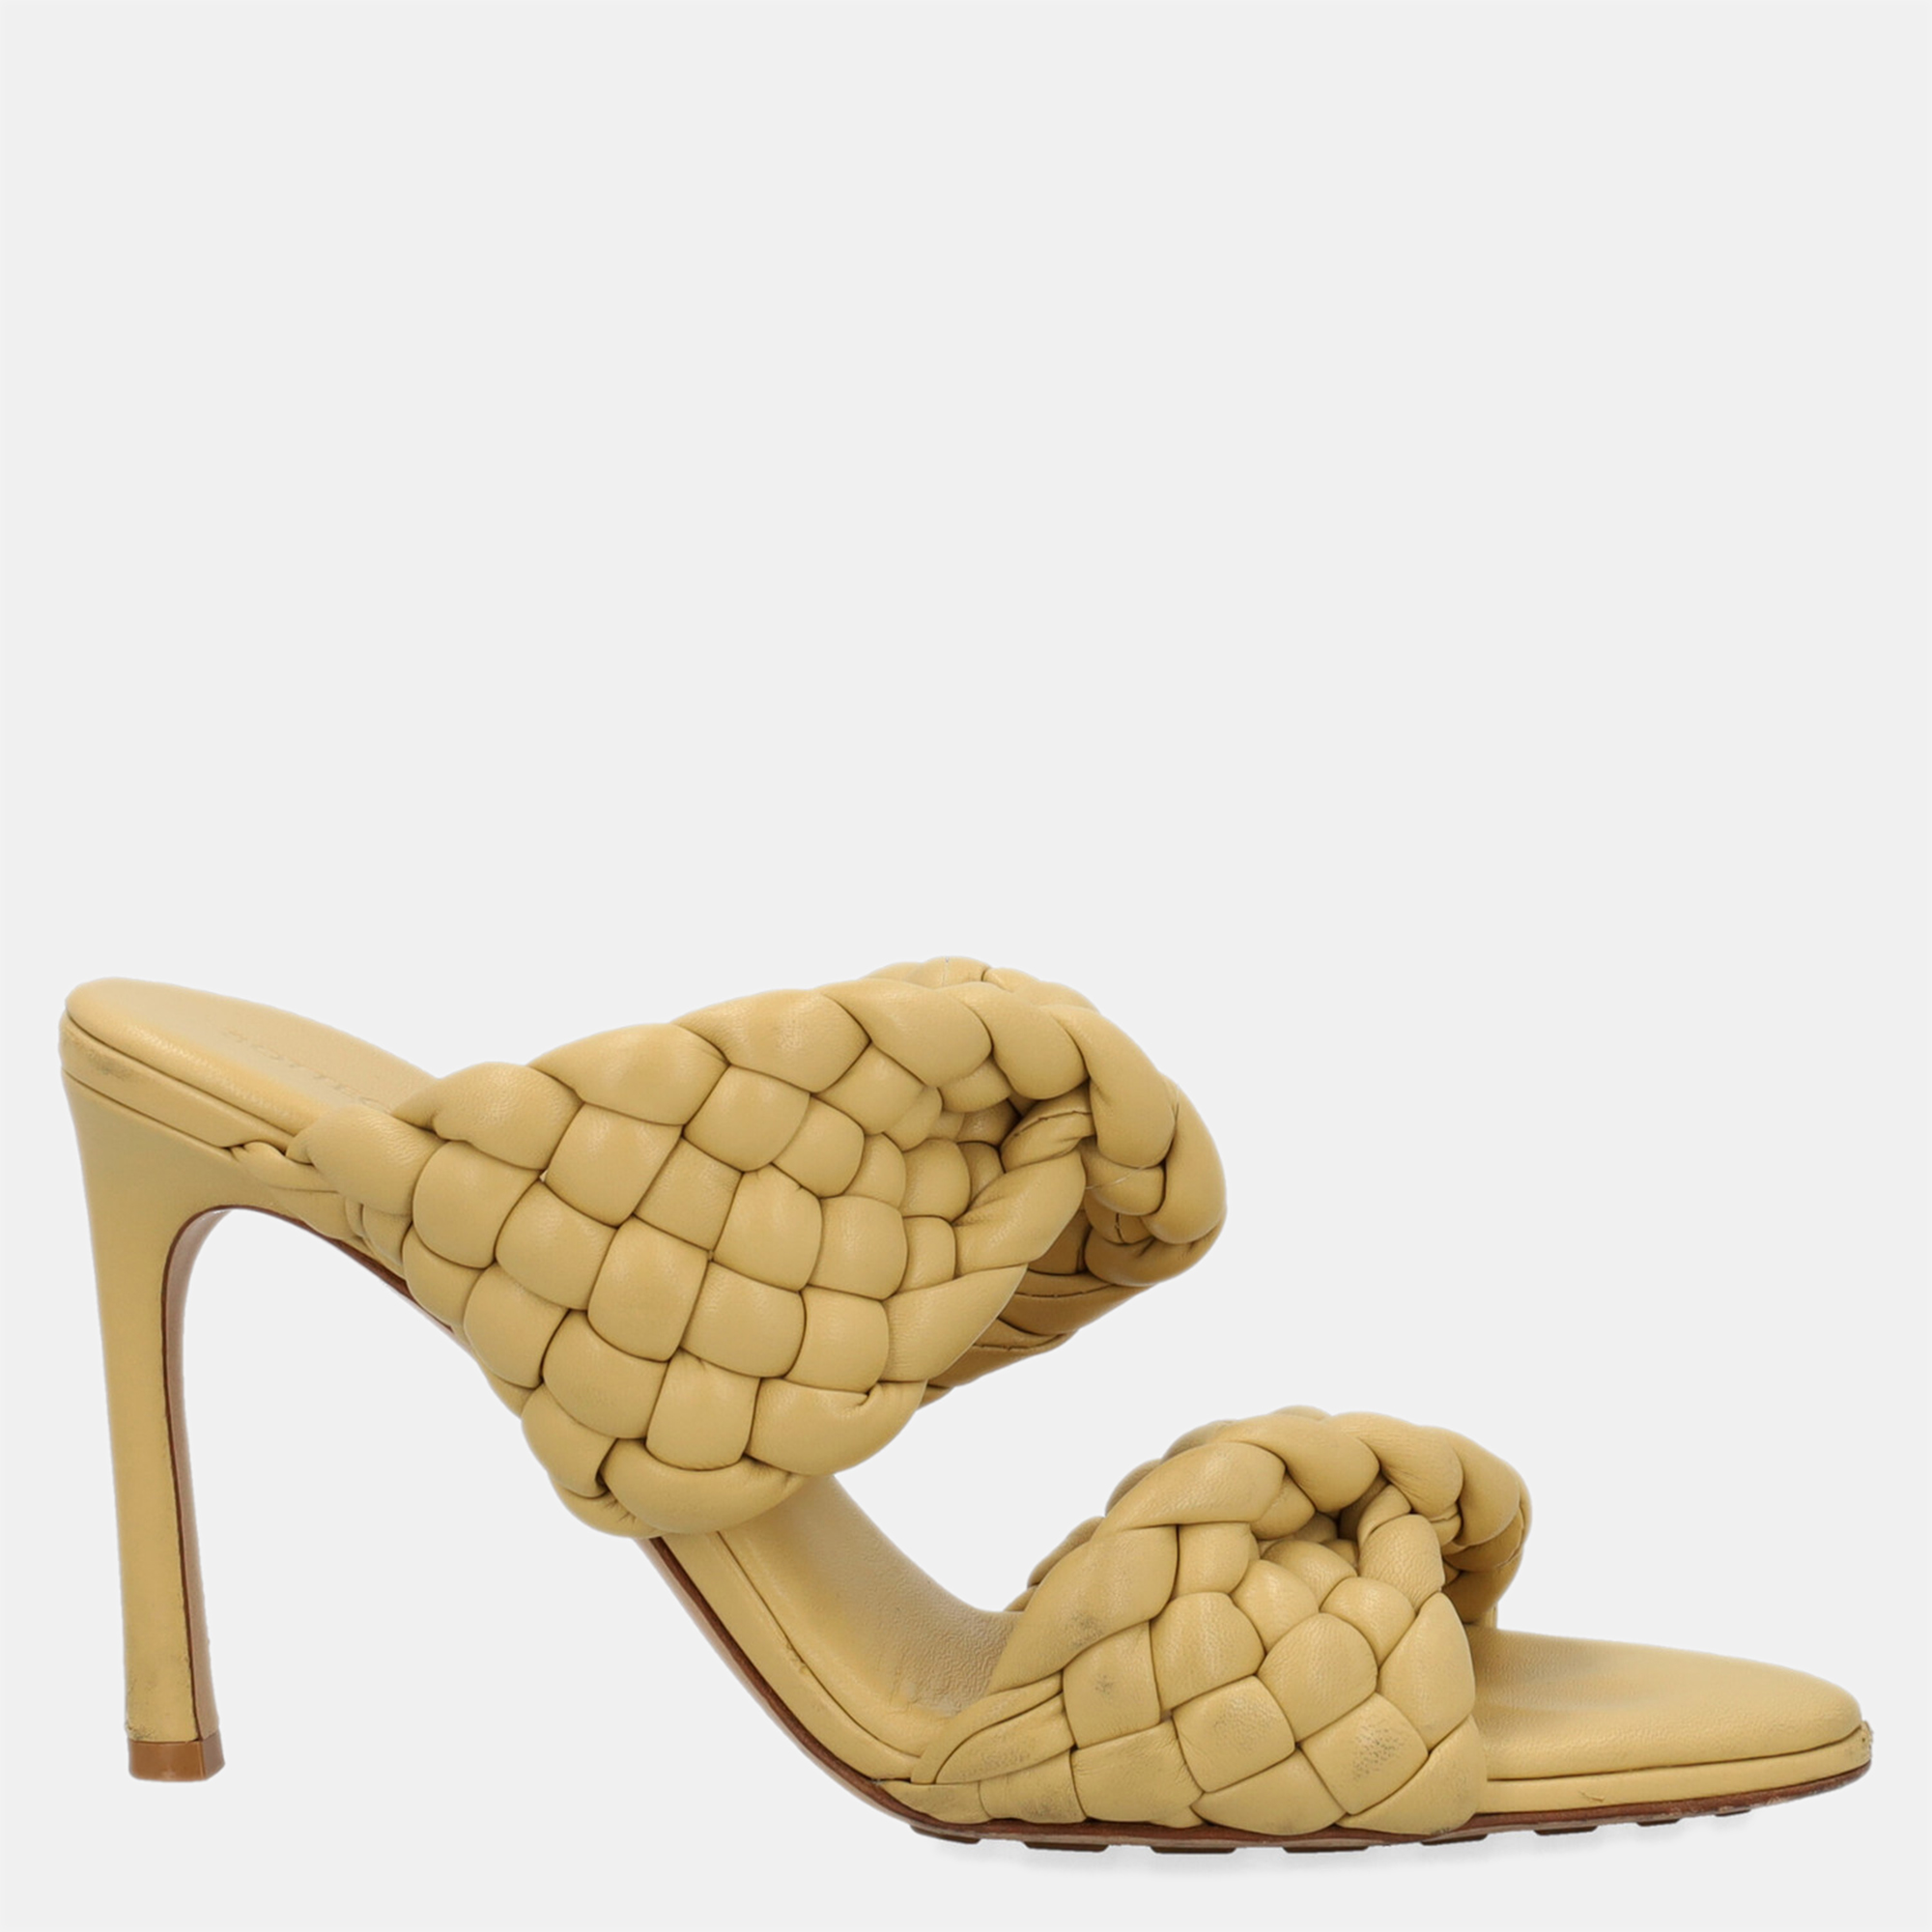 Bottega Veneta  Women's Leather Sandals - Yellow - EU 39